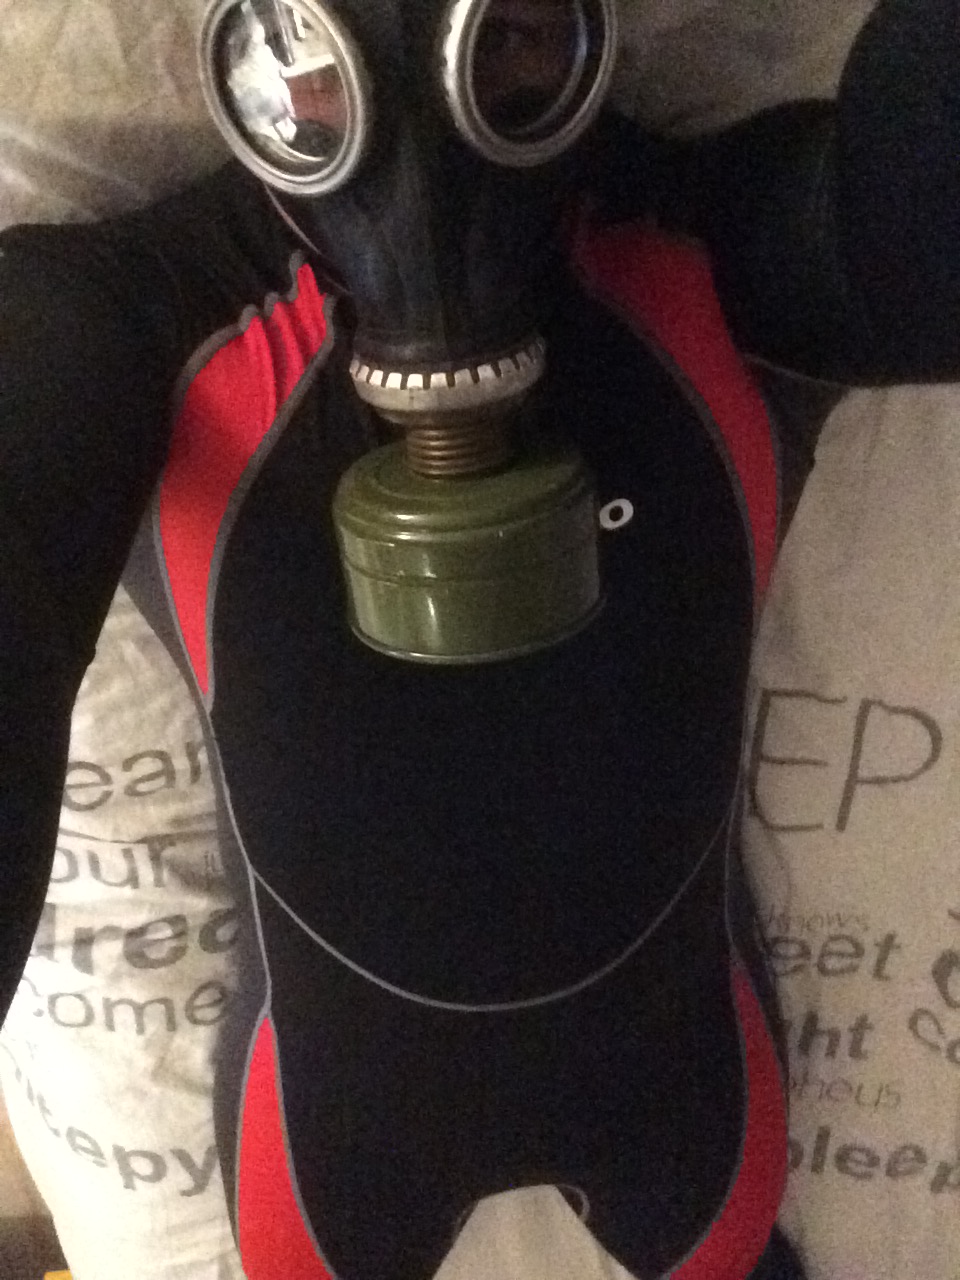 Scubapro Everflex Skin Suit + Gas Mask #2
